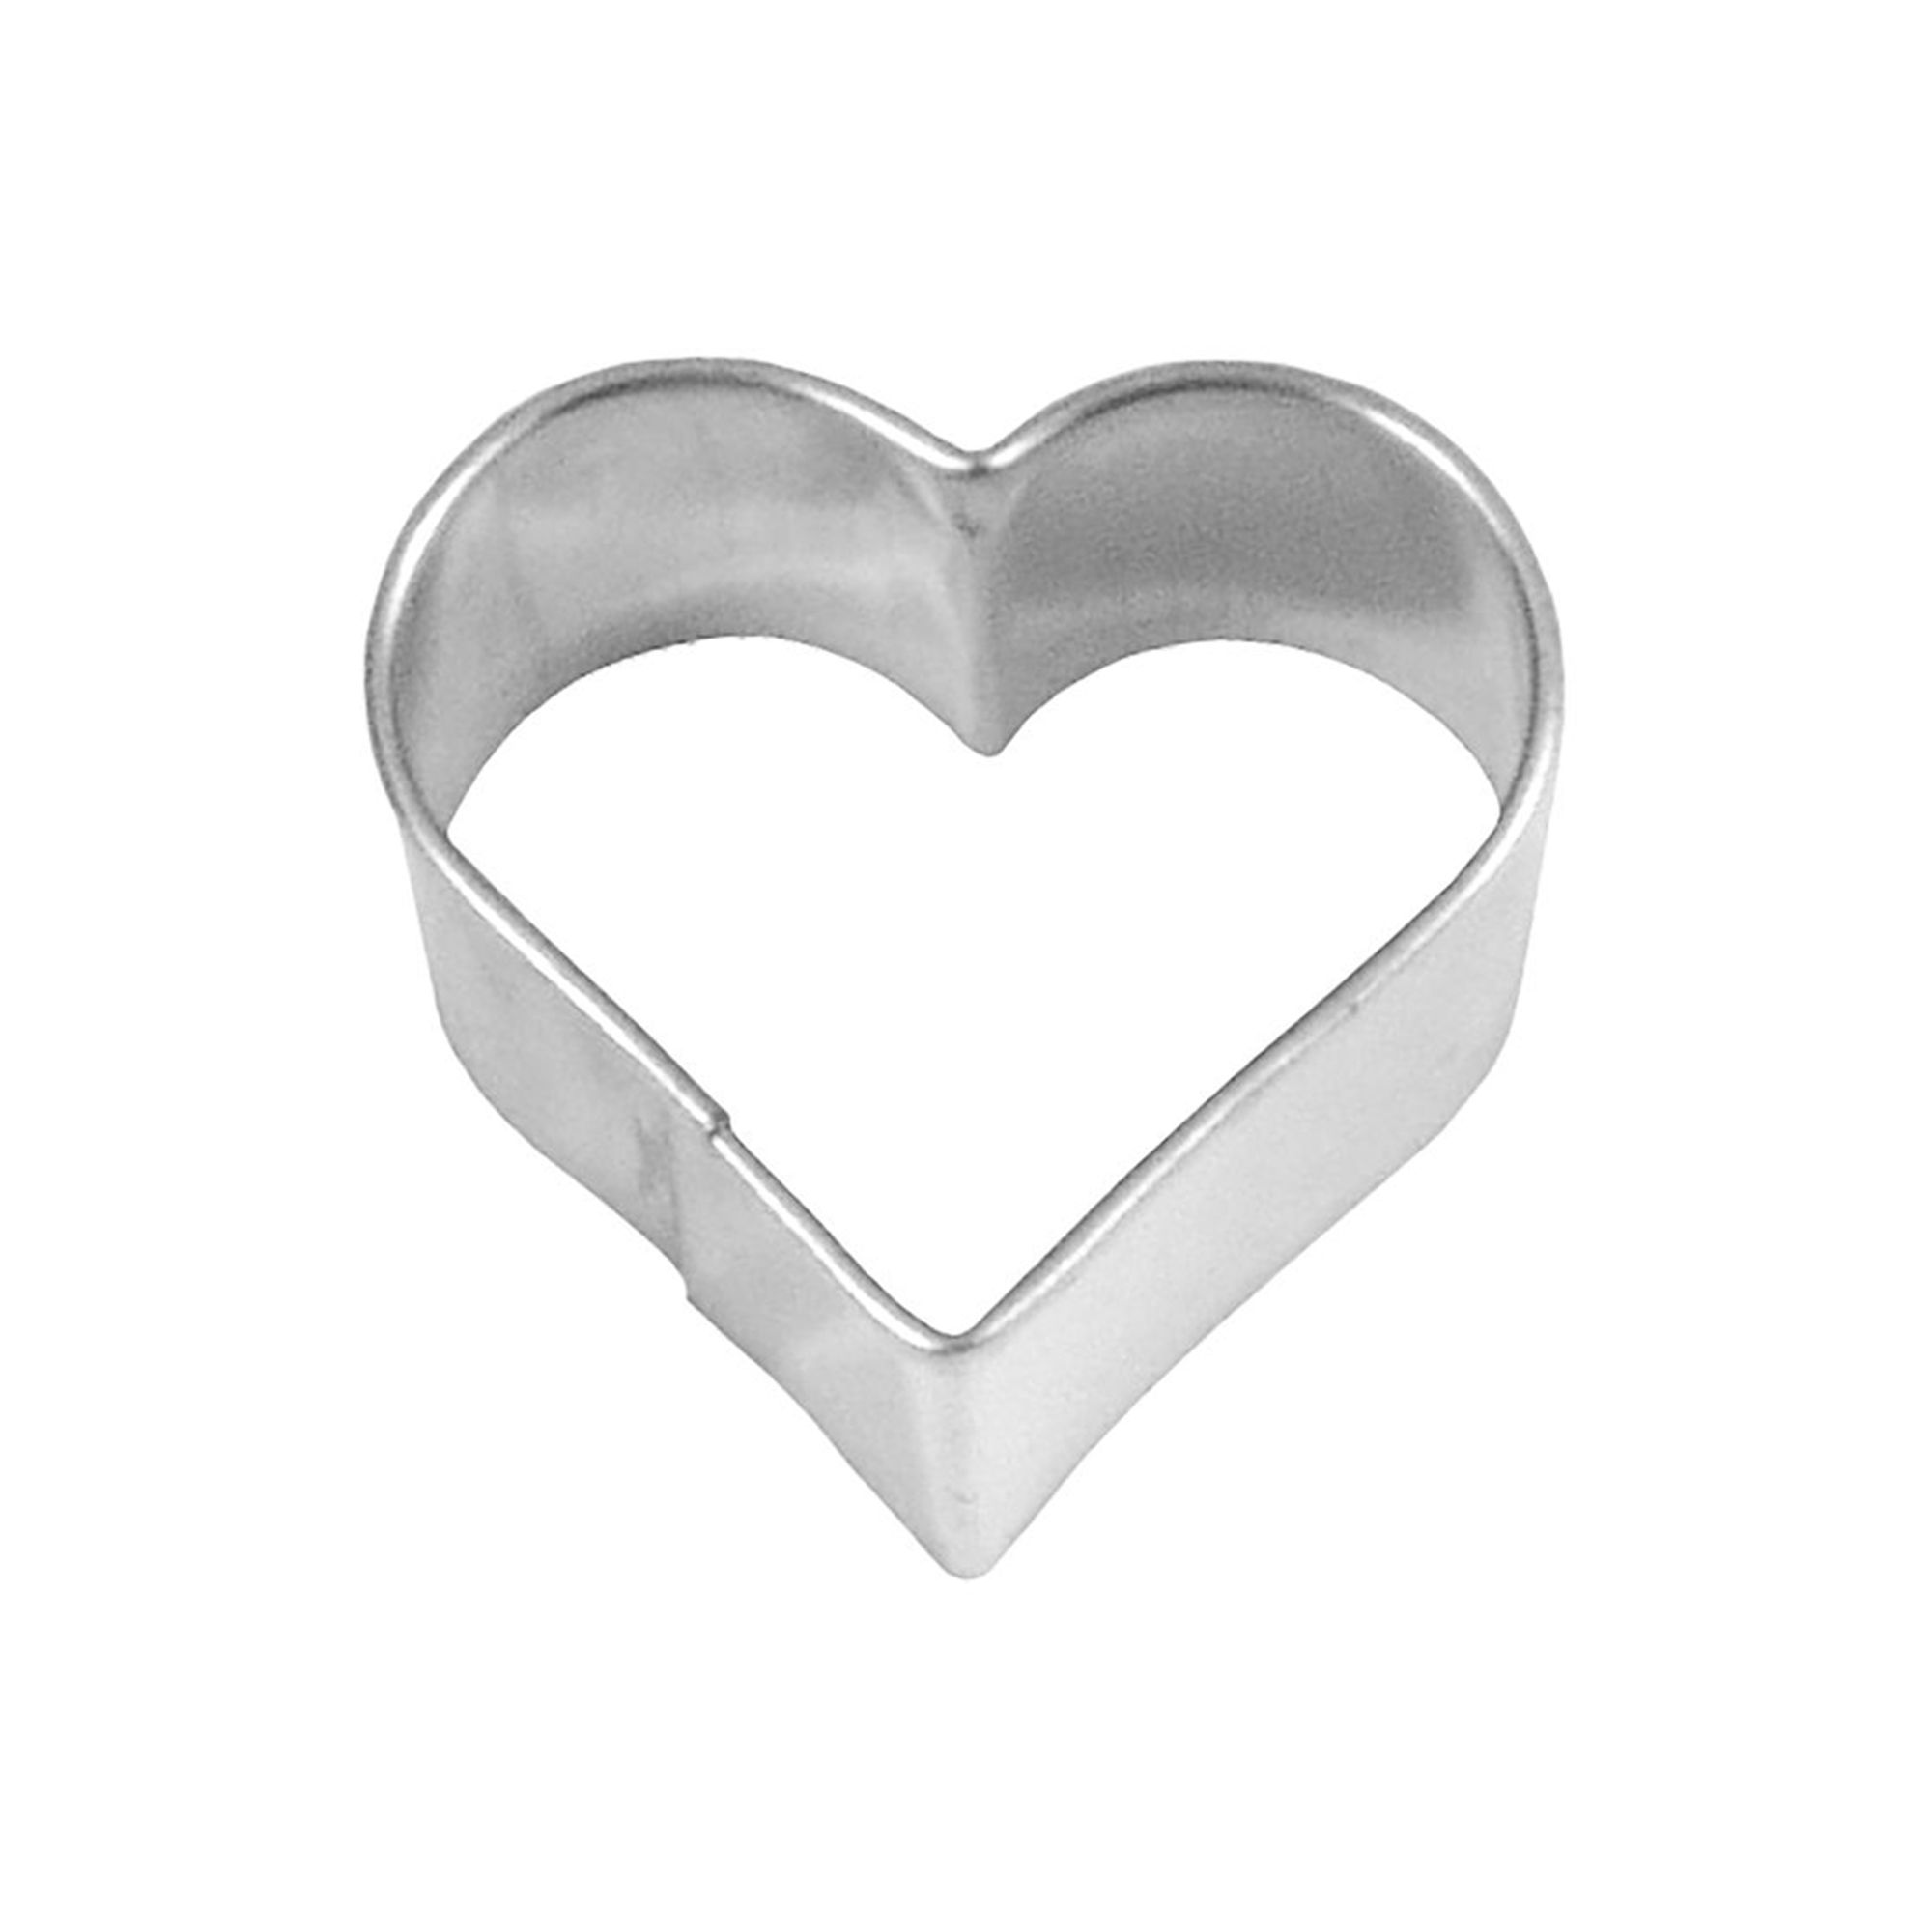 RBV Birkmann - Cookie cutter Heart 5,5 cm